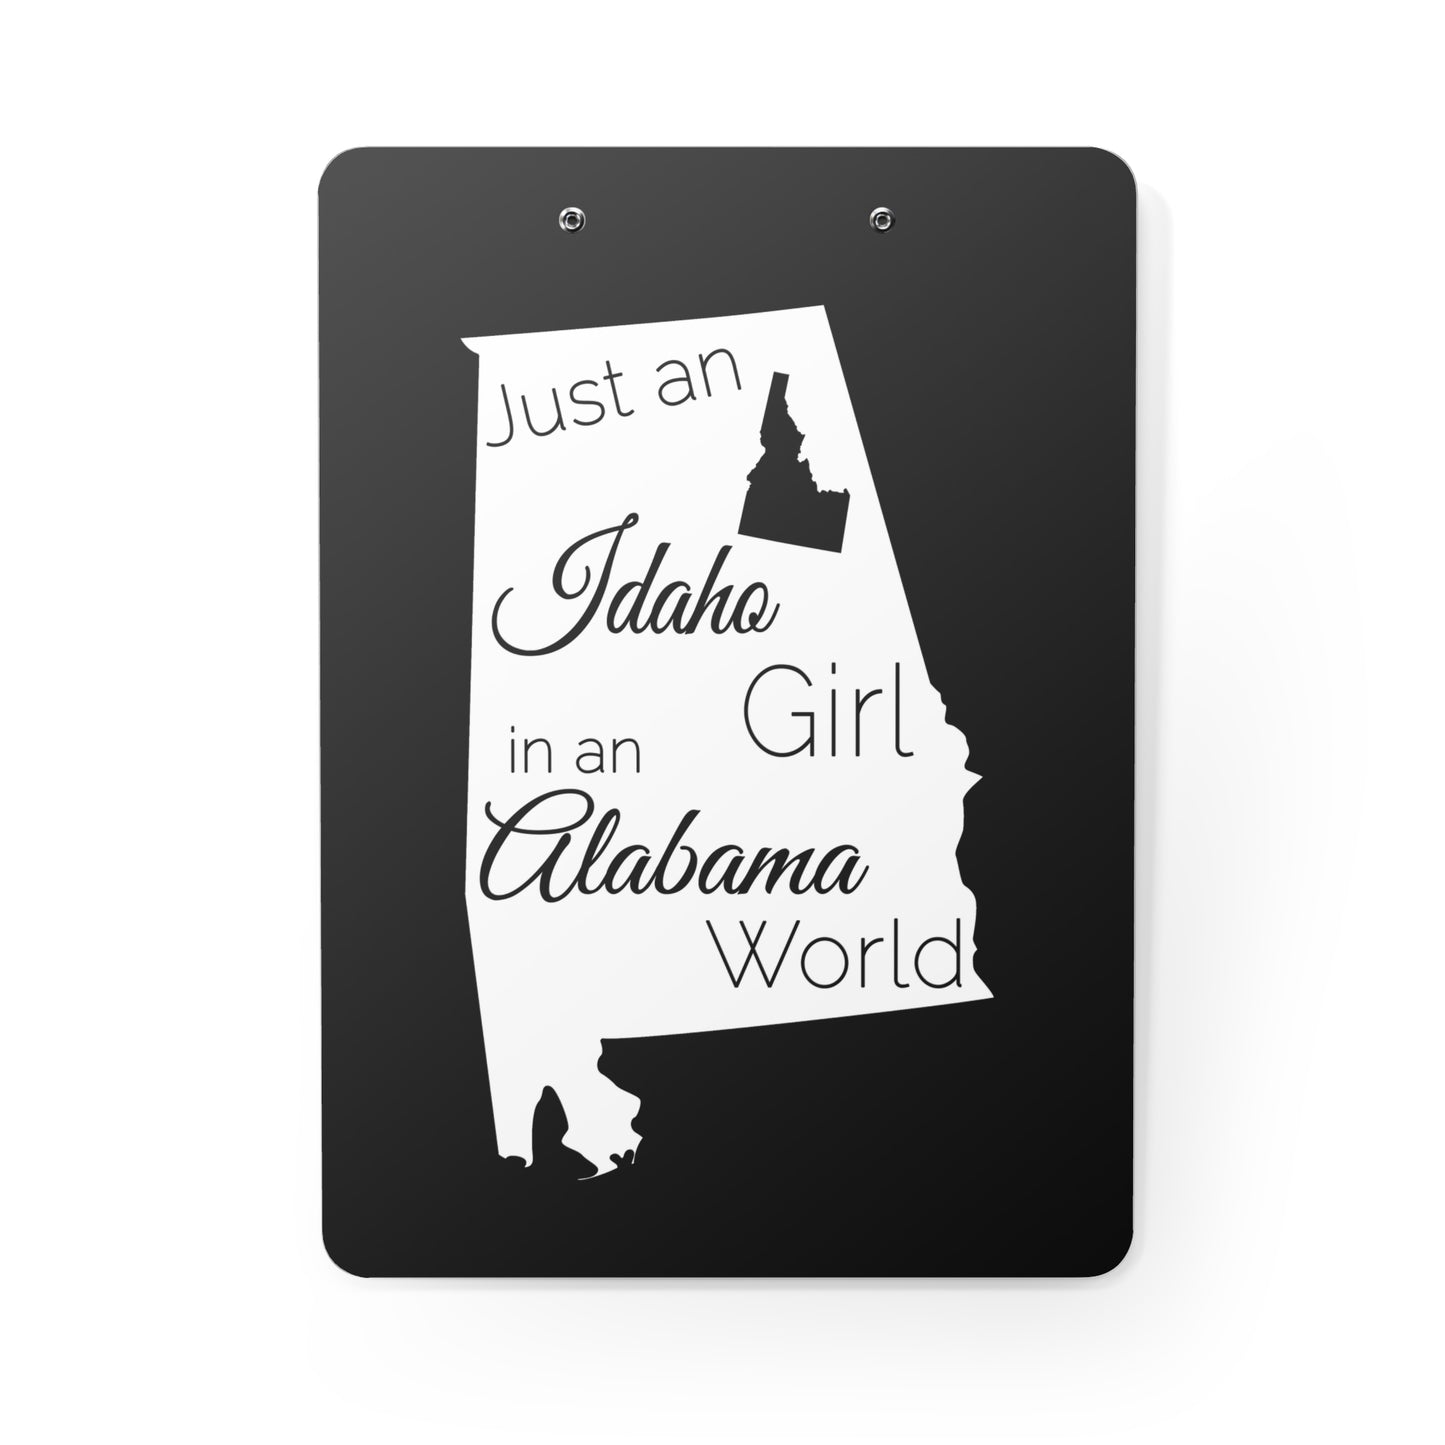 Just an Idaho Girl in an Alabama World Clipboard